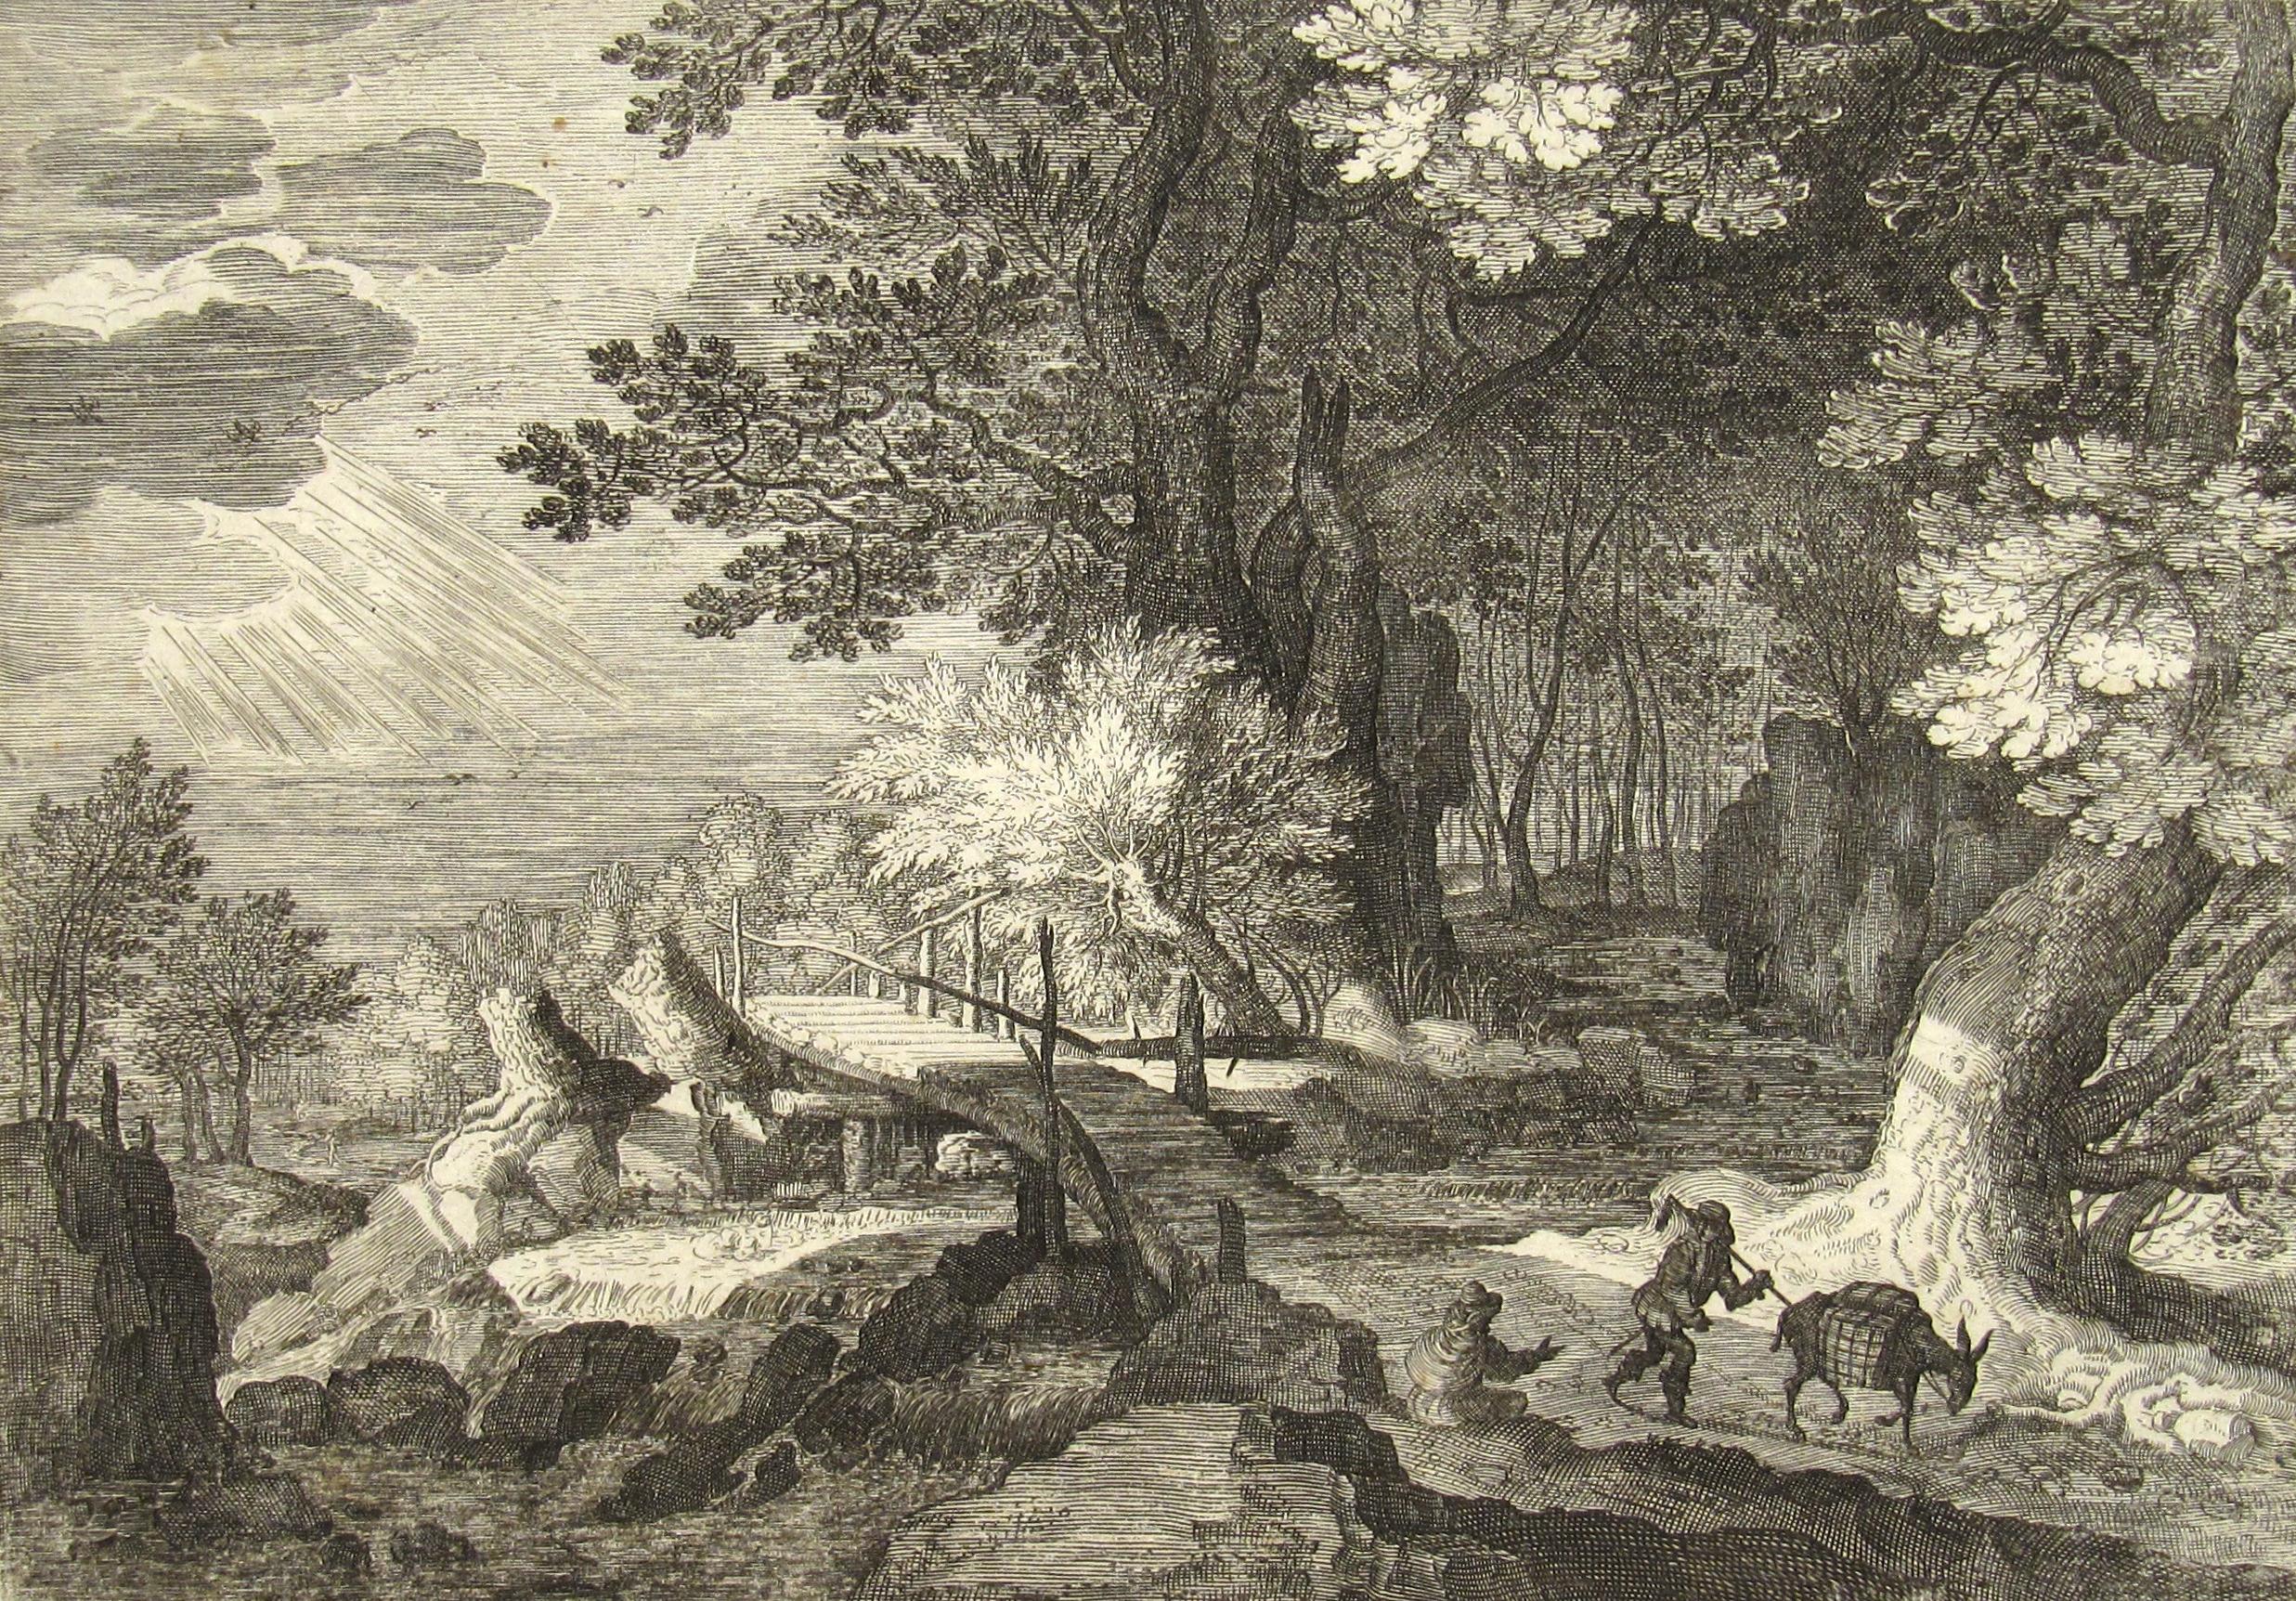 
Aegidius Sadeler
(Flamand, 1570-1629)

Scène romantique dans les bois avec un voyageur et sa mule chargée passant à côté d'un personnage assis se reposant sur le bord de la route

•	XVIe siècle, peut-être début XVIIe siècle
•	Gravure sur cuivre sur